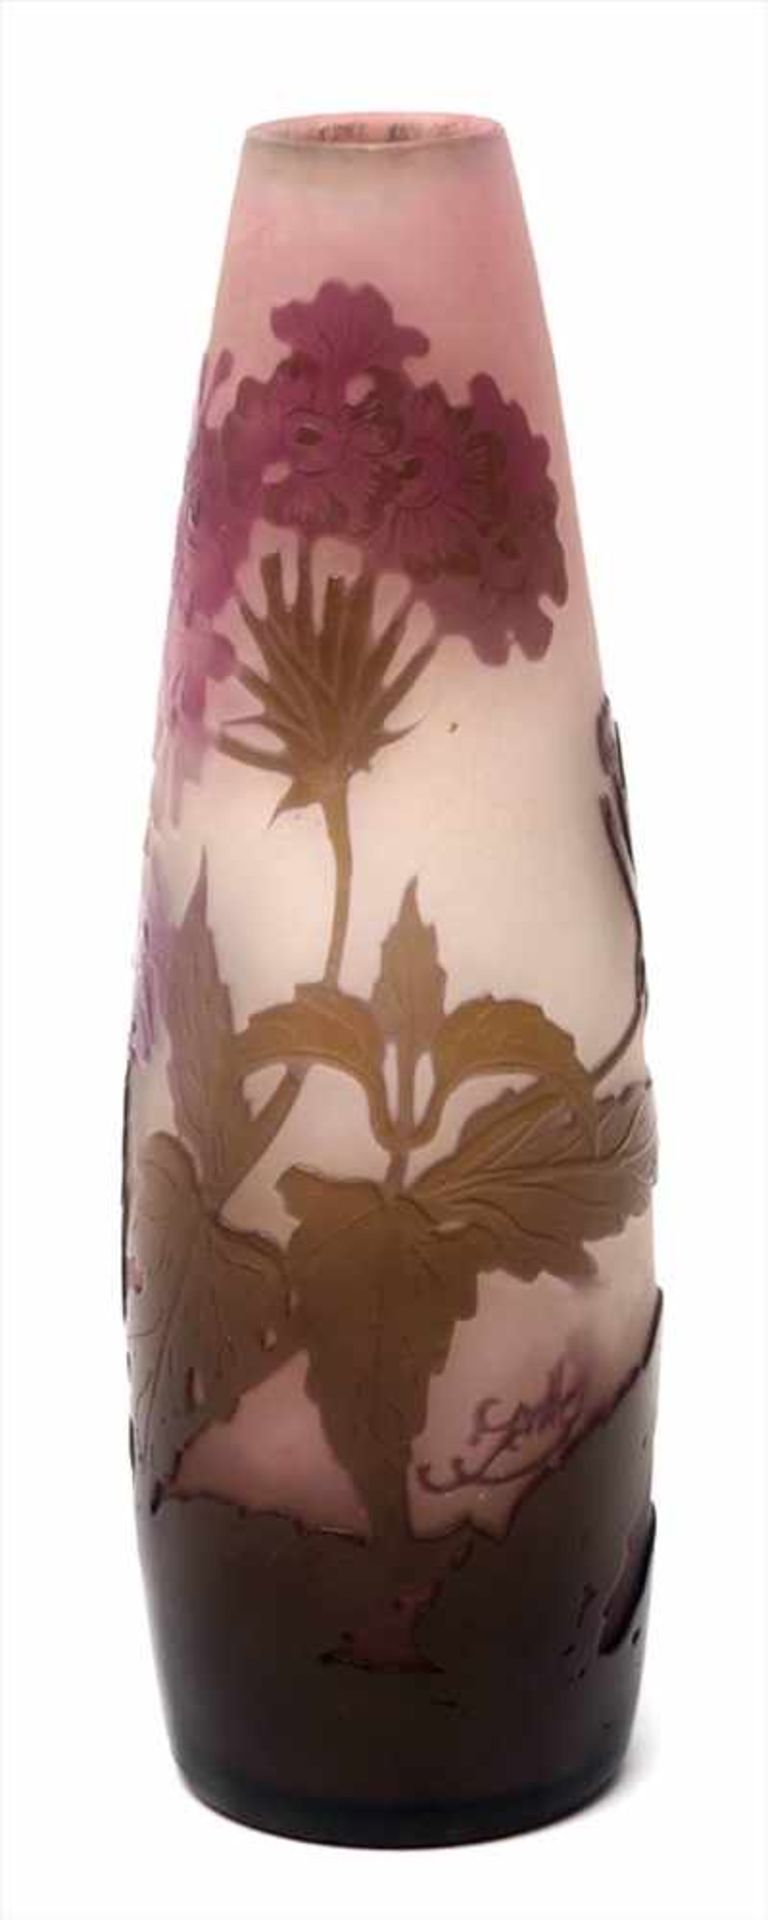 Vase, GalléTropfenförmiger Korpus. Von Weiß nach Mattrot verlaufendes Glas. Grün-roter Überfang